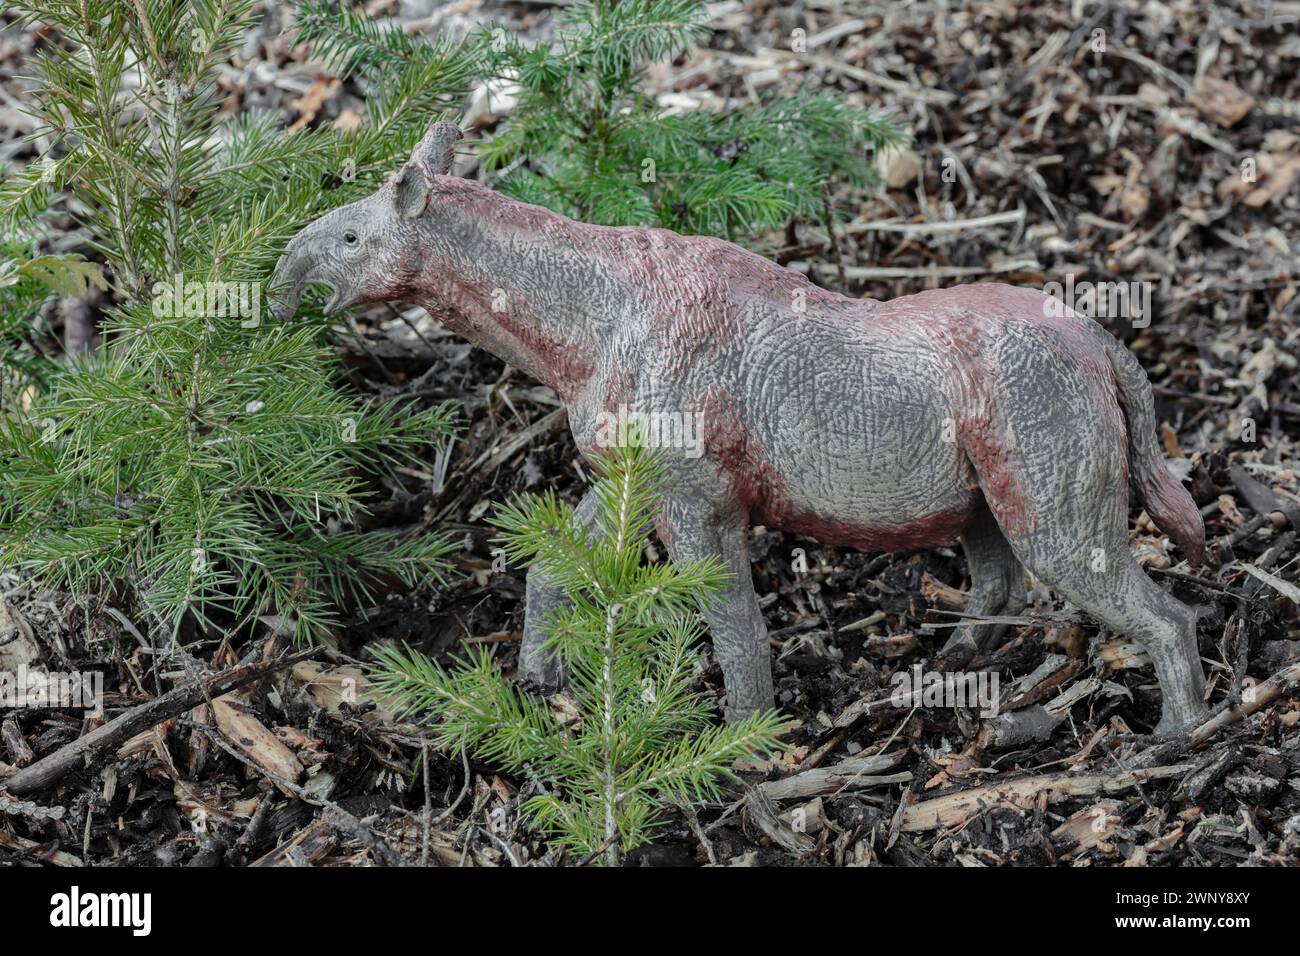 Jahre nach einem verheerenden Waldbrand kehrt das Leben zurück, um das größte Land-Säugetier zu ernähren, das der Wissenschaft bekannt ist, das Paraceratherium (Collecta 2021). Stockfoto